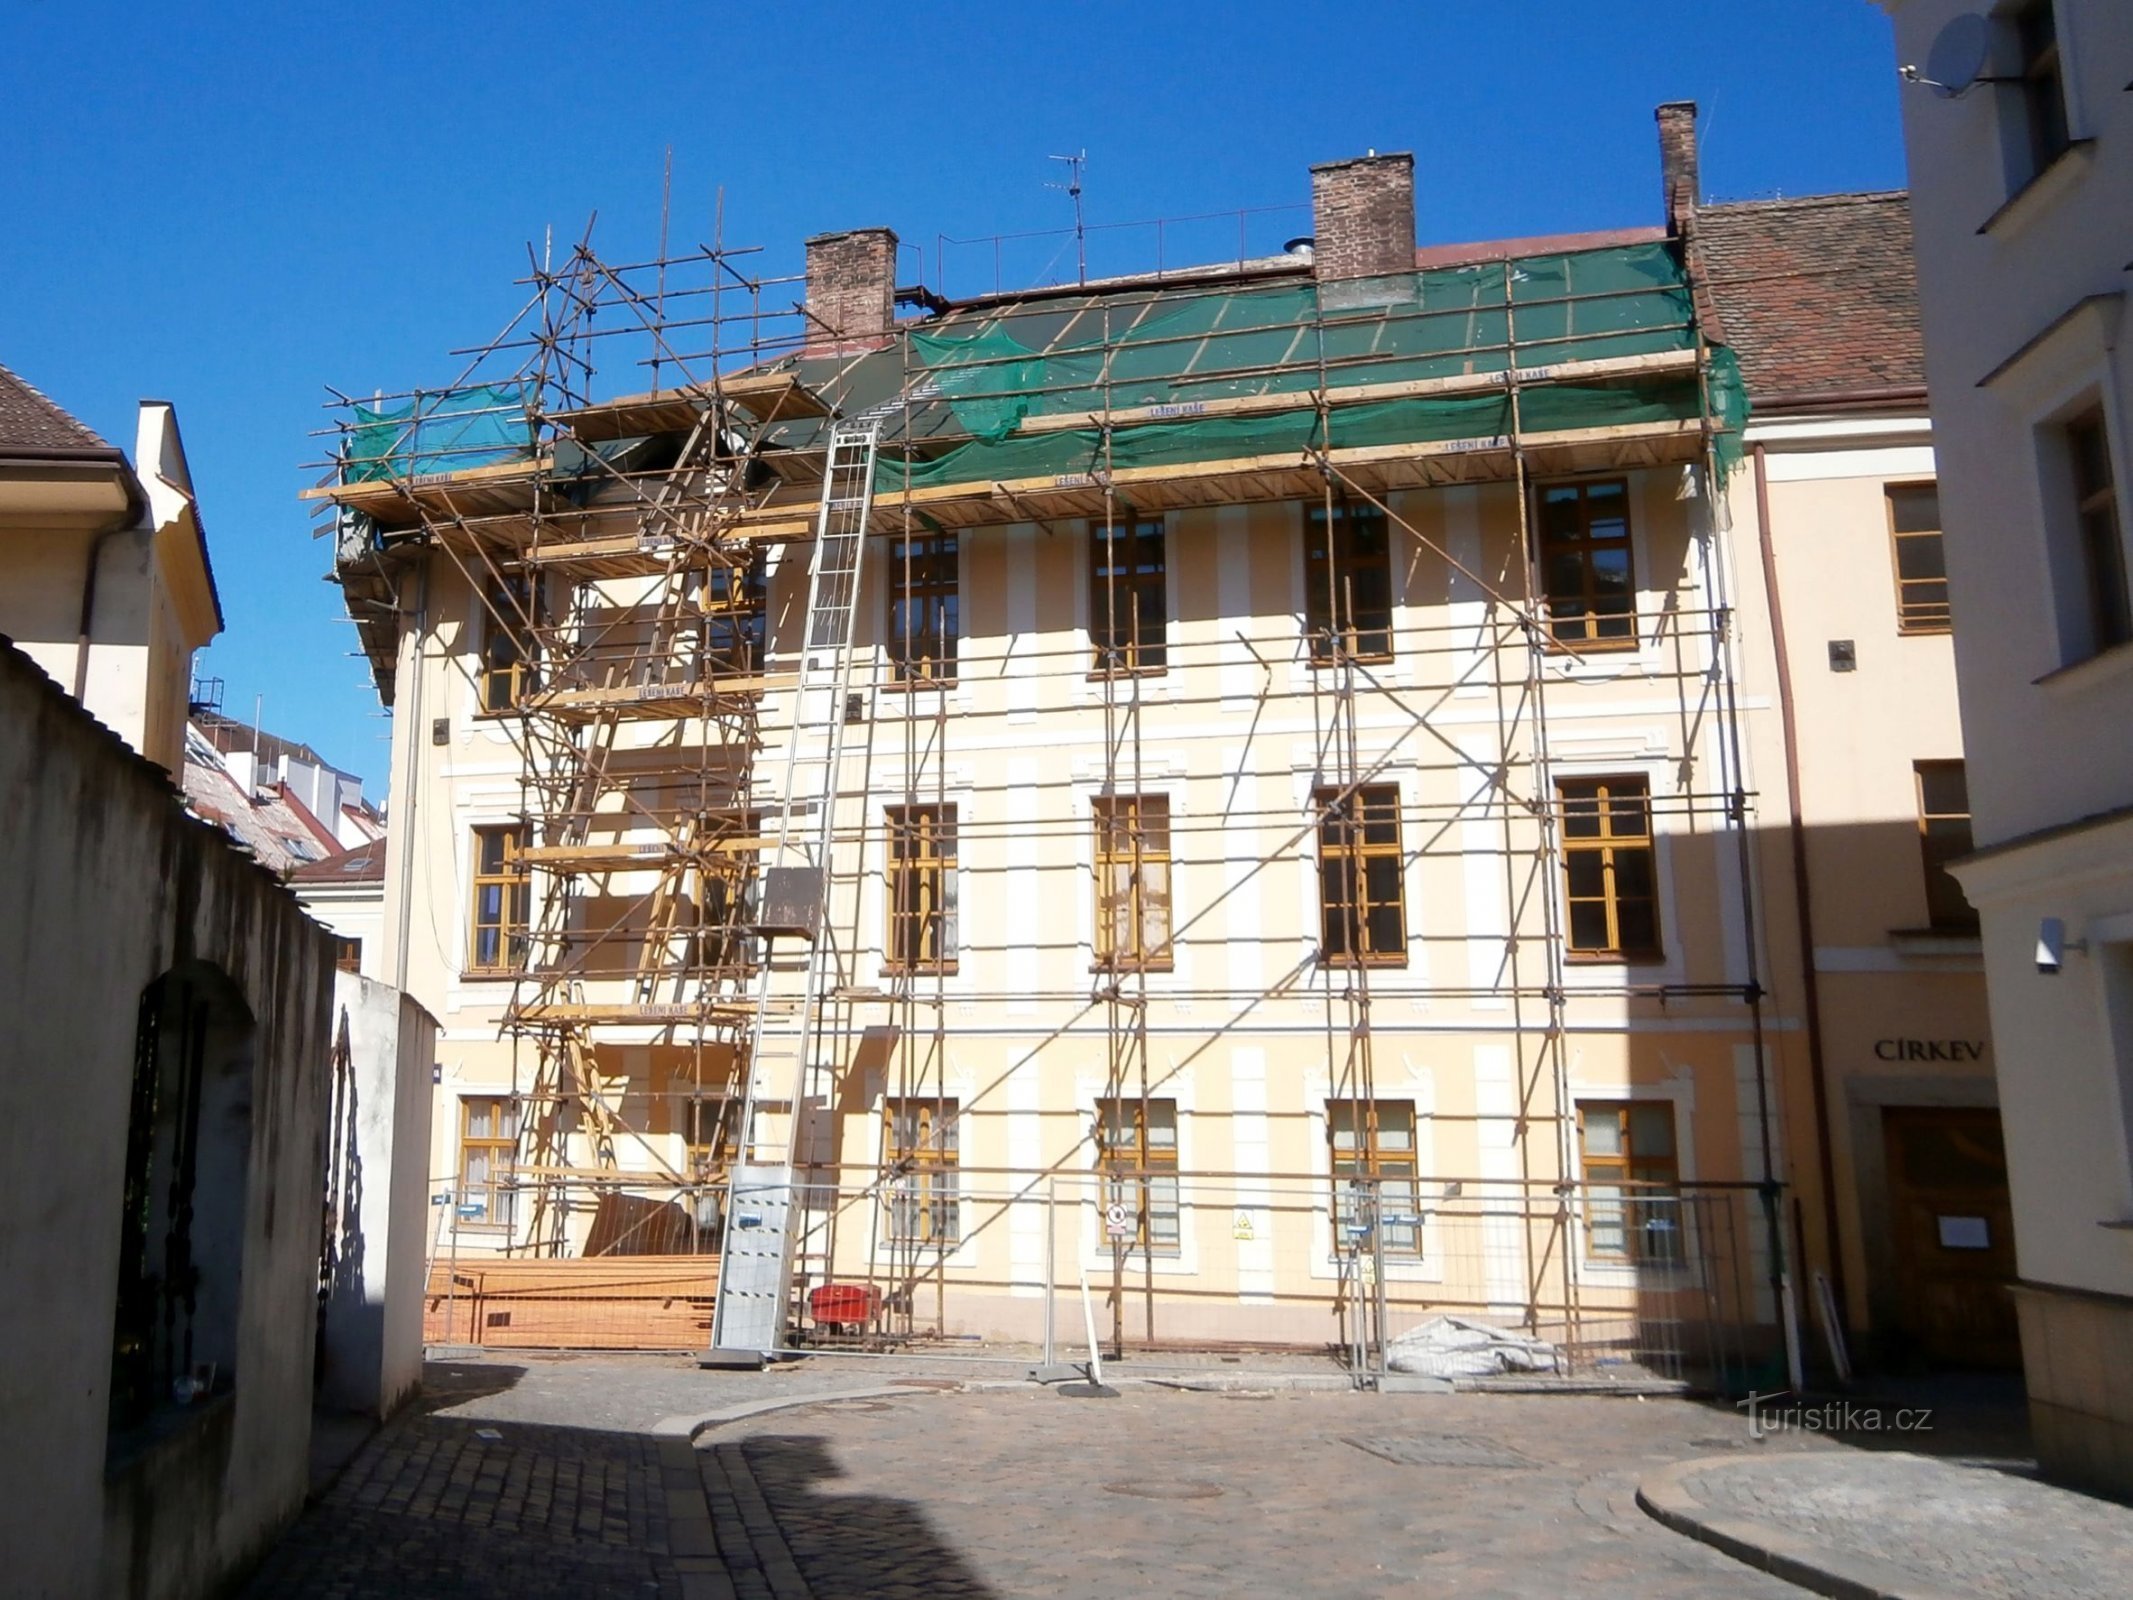 Repair of the roof at No. 89 (Hradec Králové, 18.6.2016/XNUMX/XNUMX)